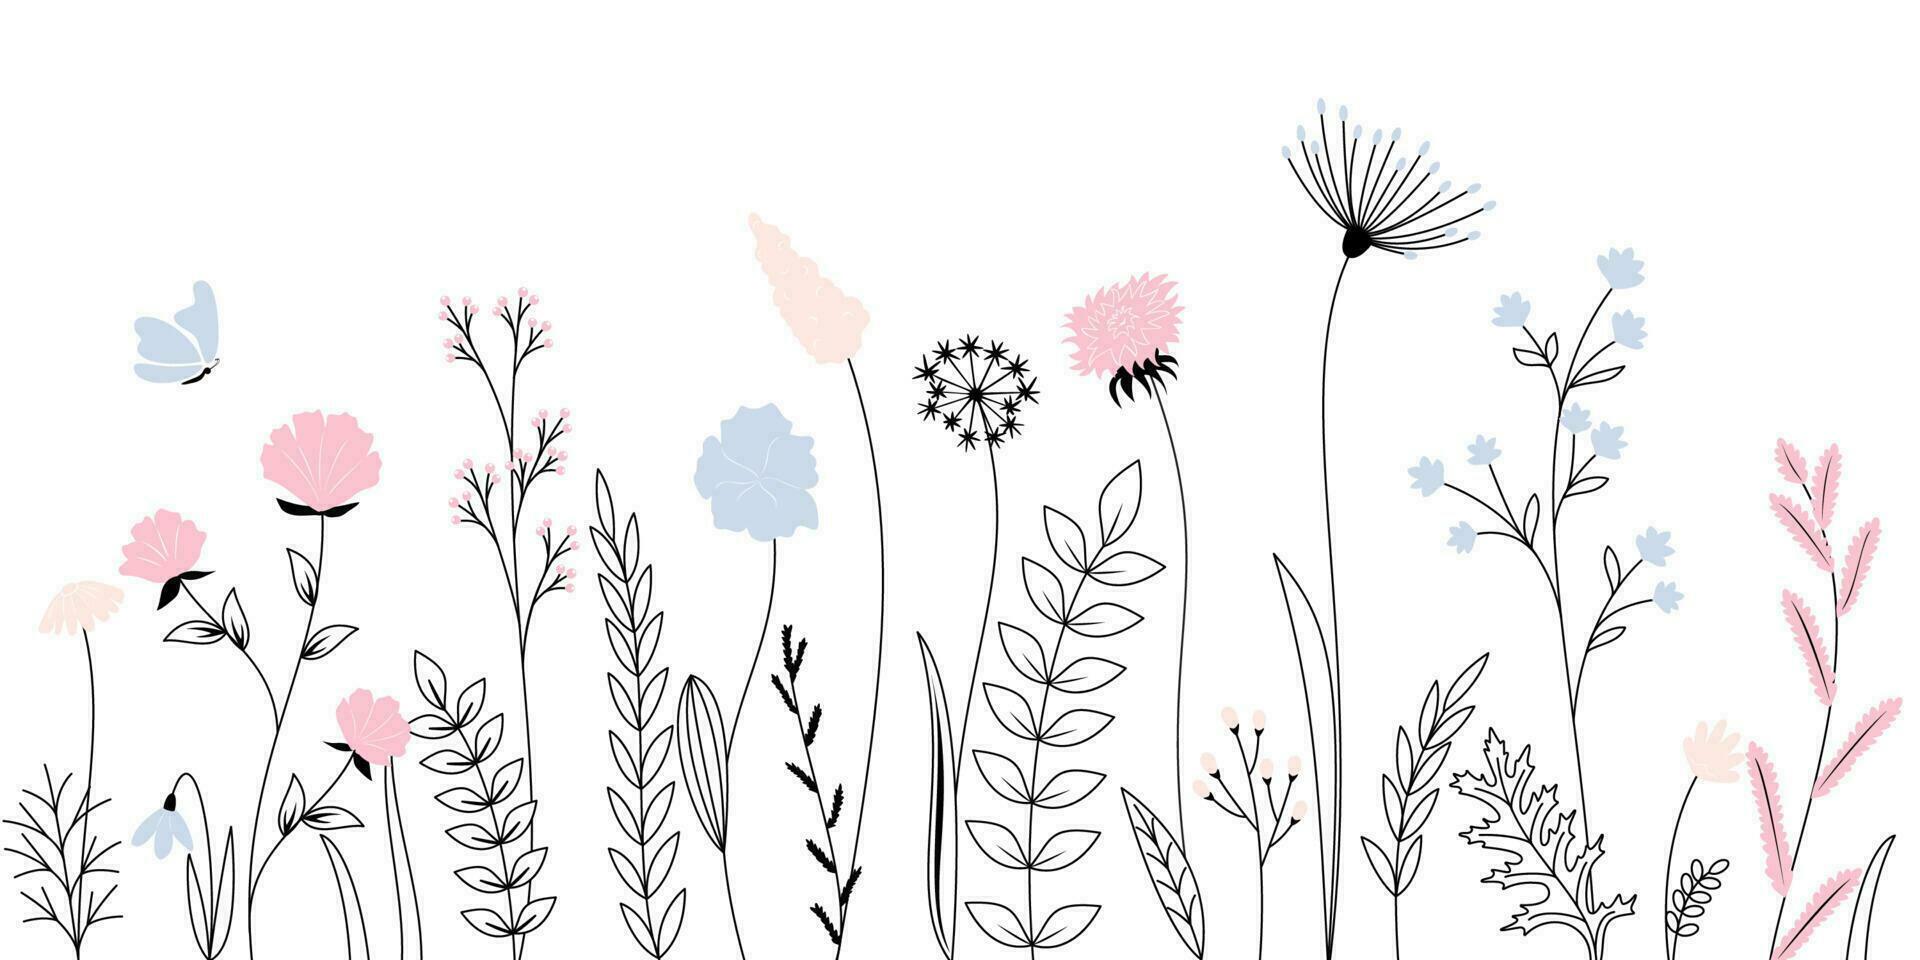 vildblommor, örter, blommor, växter och fjärilar flygande. översikt stil full vektor illustration.